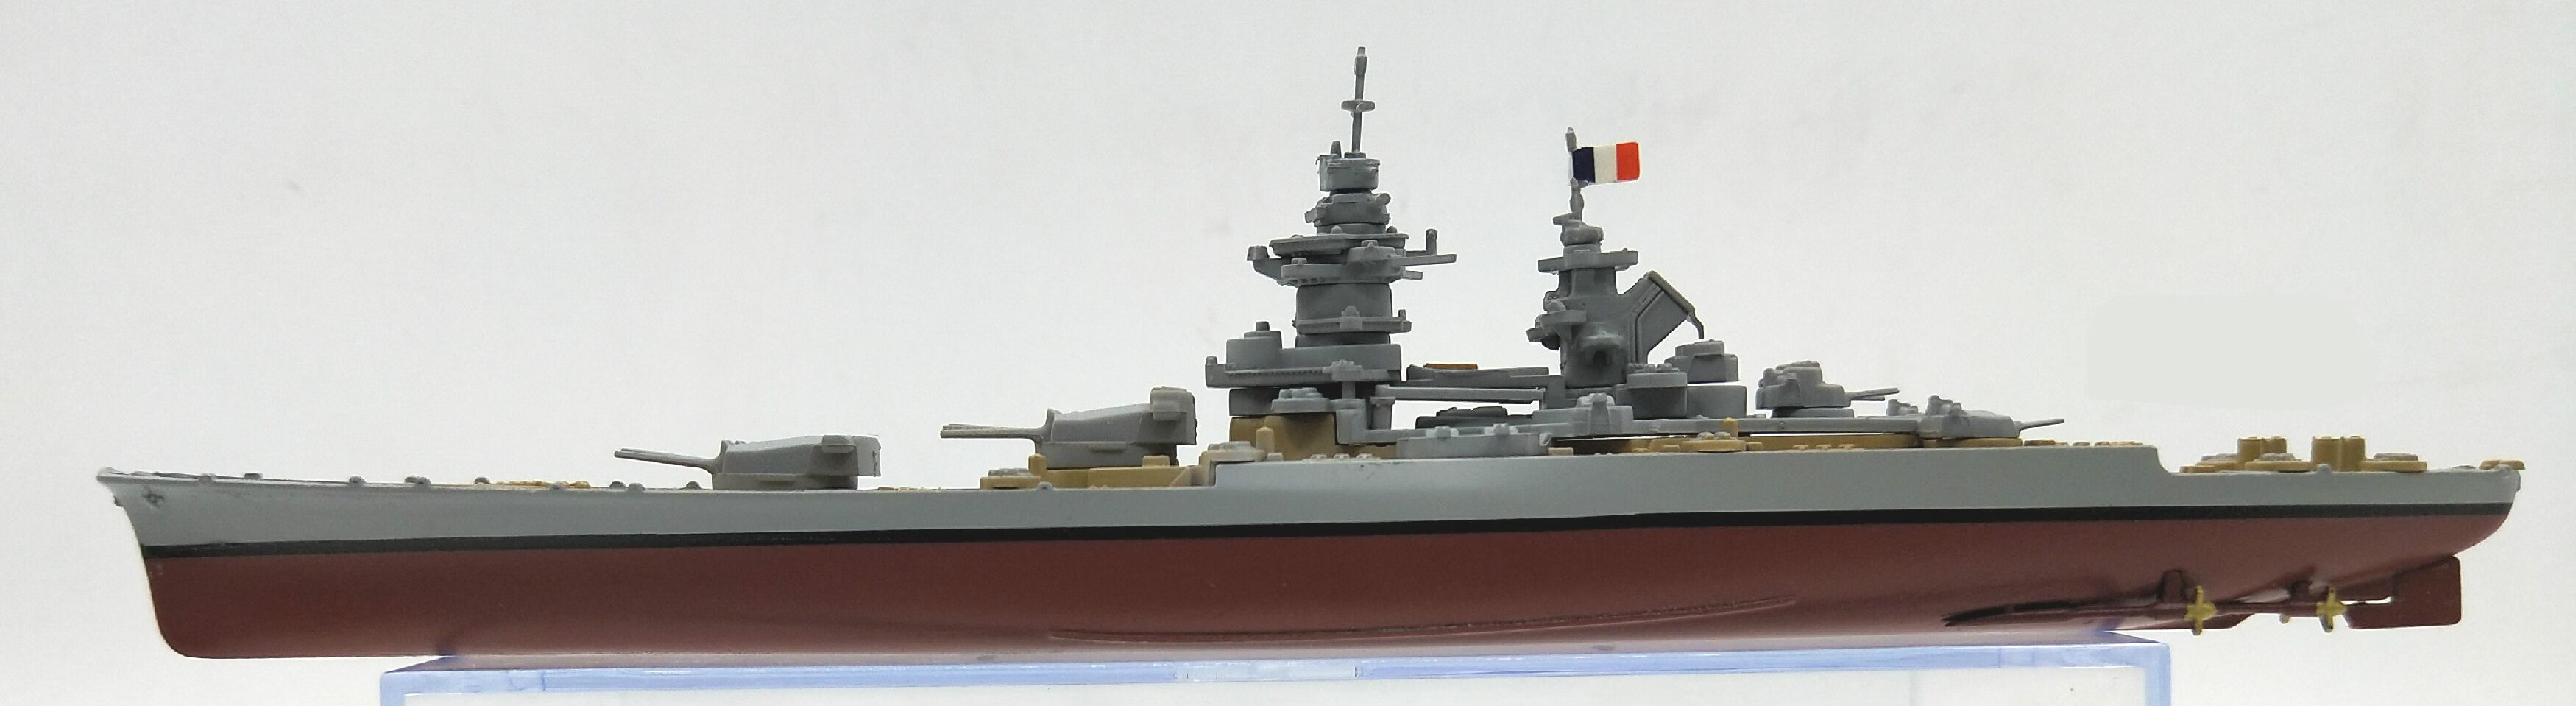 英国乔治五世号11000军舰巡洋战列舰密苏里大和衣阿华俾斯麦模型下单